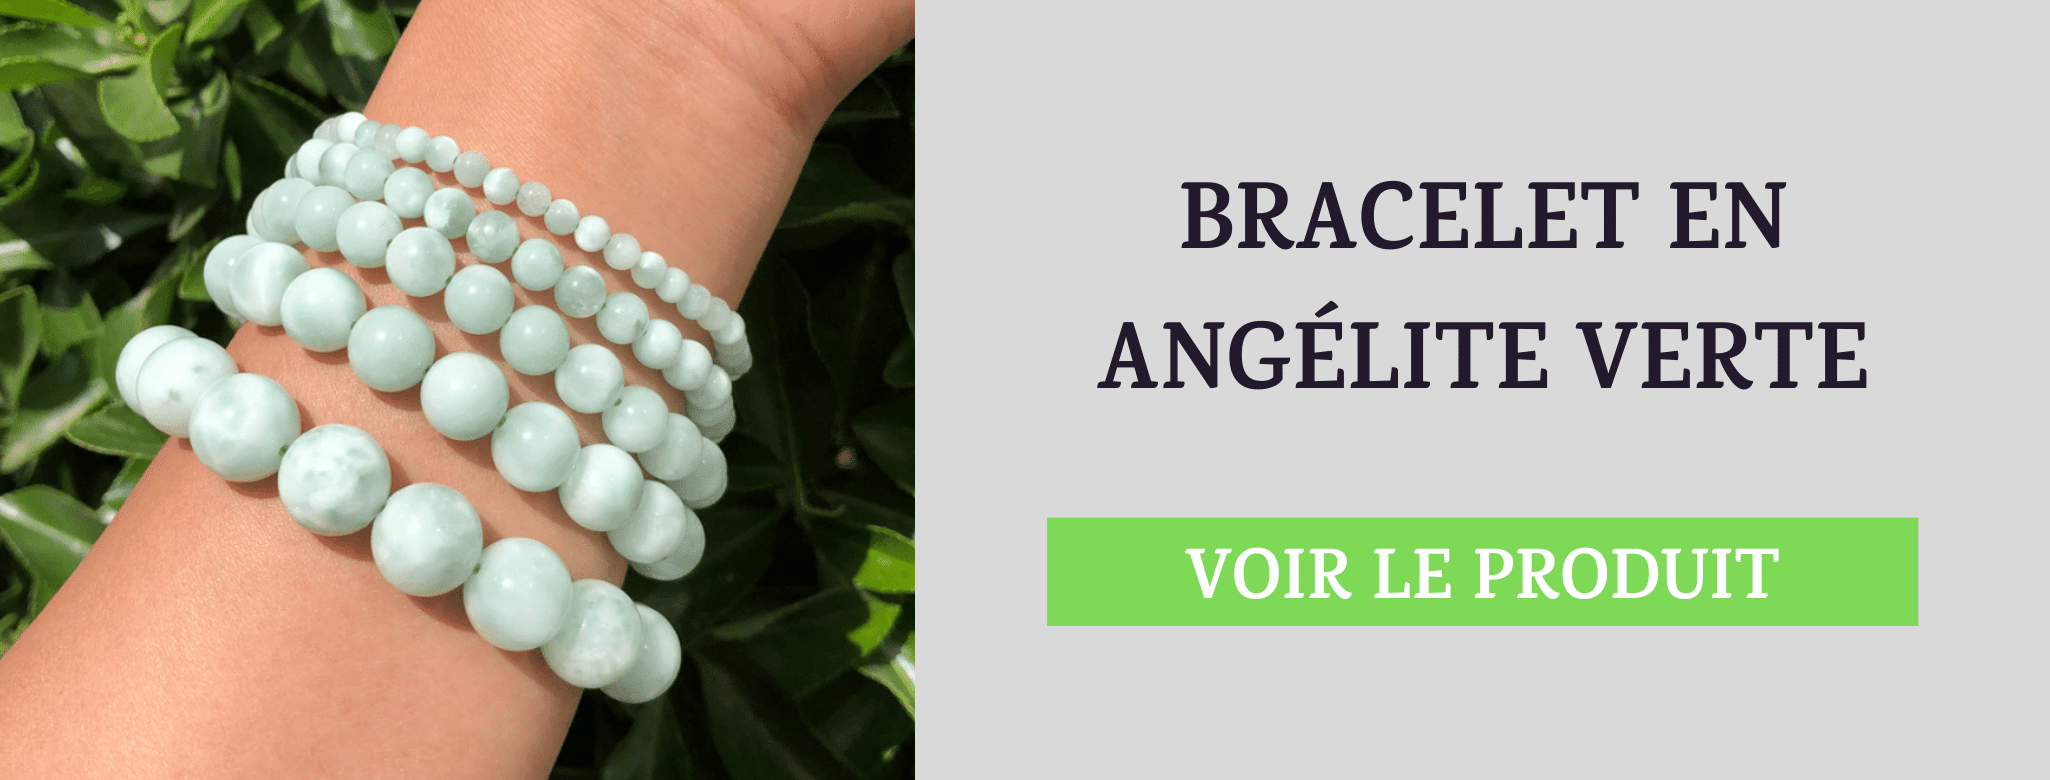 Bracelet Angélite Verte